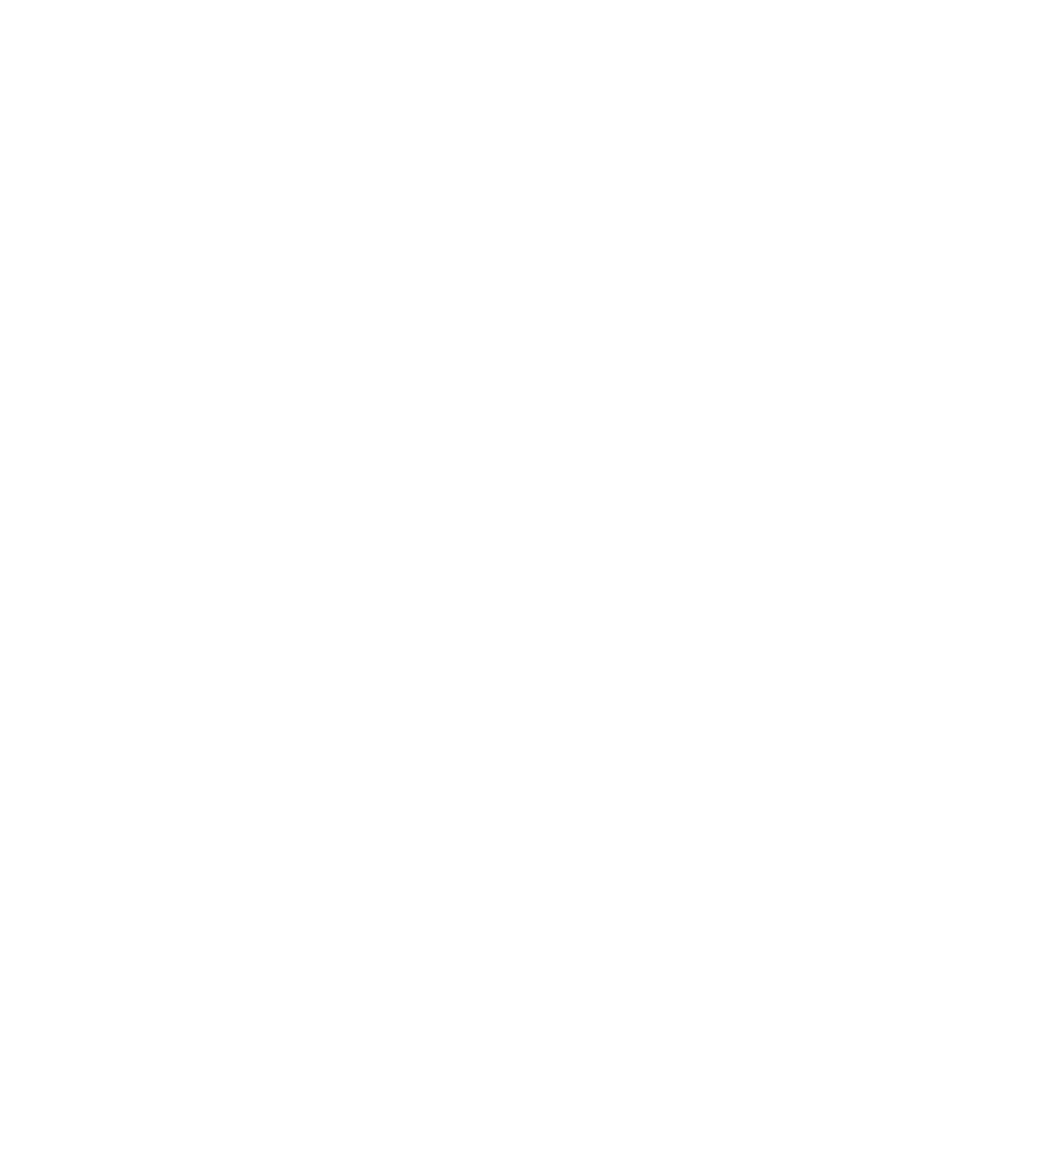 www.danielholmesmusic.com